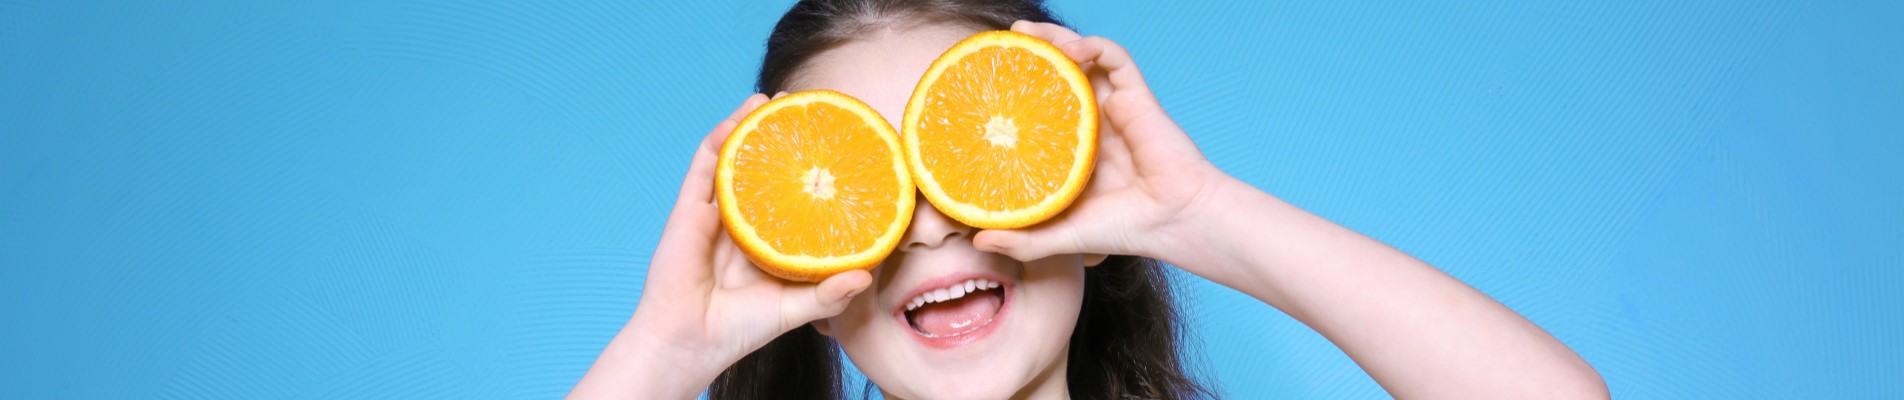 10 ideias para economizar nos presentes de Dia das Crianças | Foto de uma criança sorrindo enquanto segura duas laranjas em frente do rosto | Economia e renda extra | Eu Dou Conta